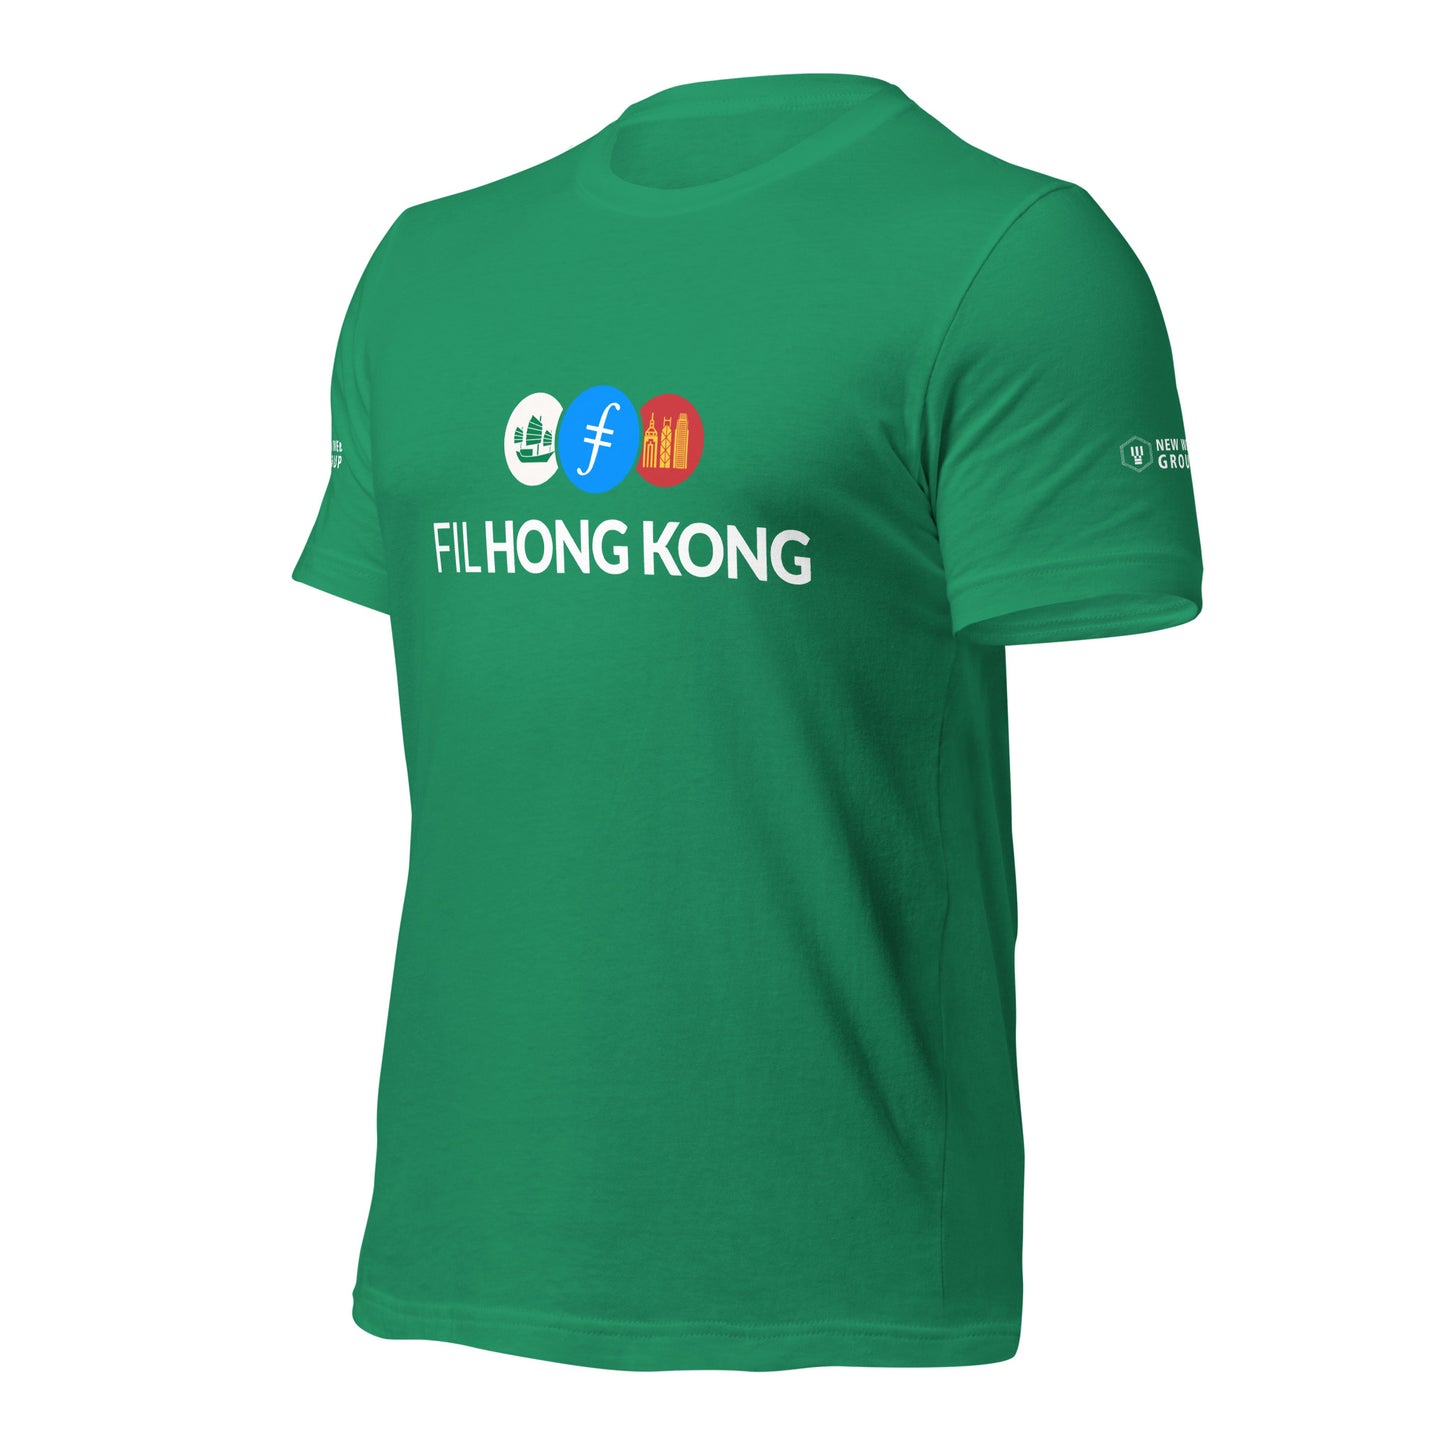 FIL Hong Kong Shirt